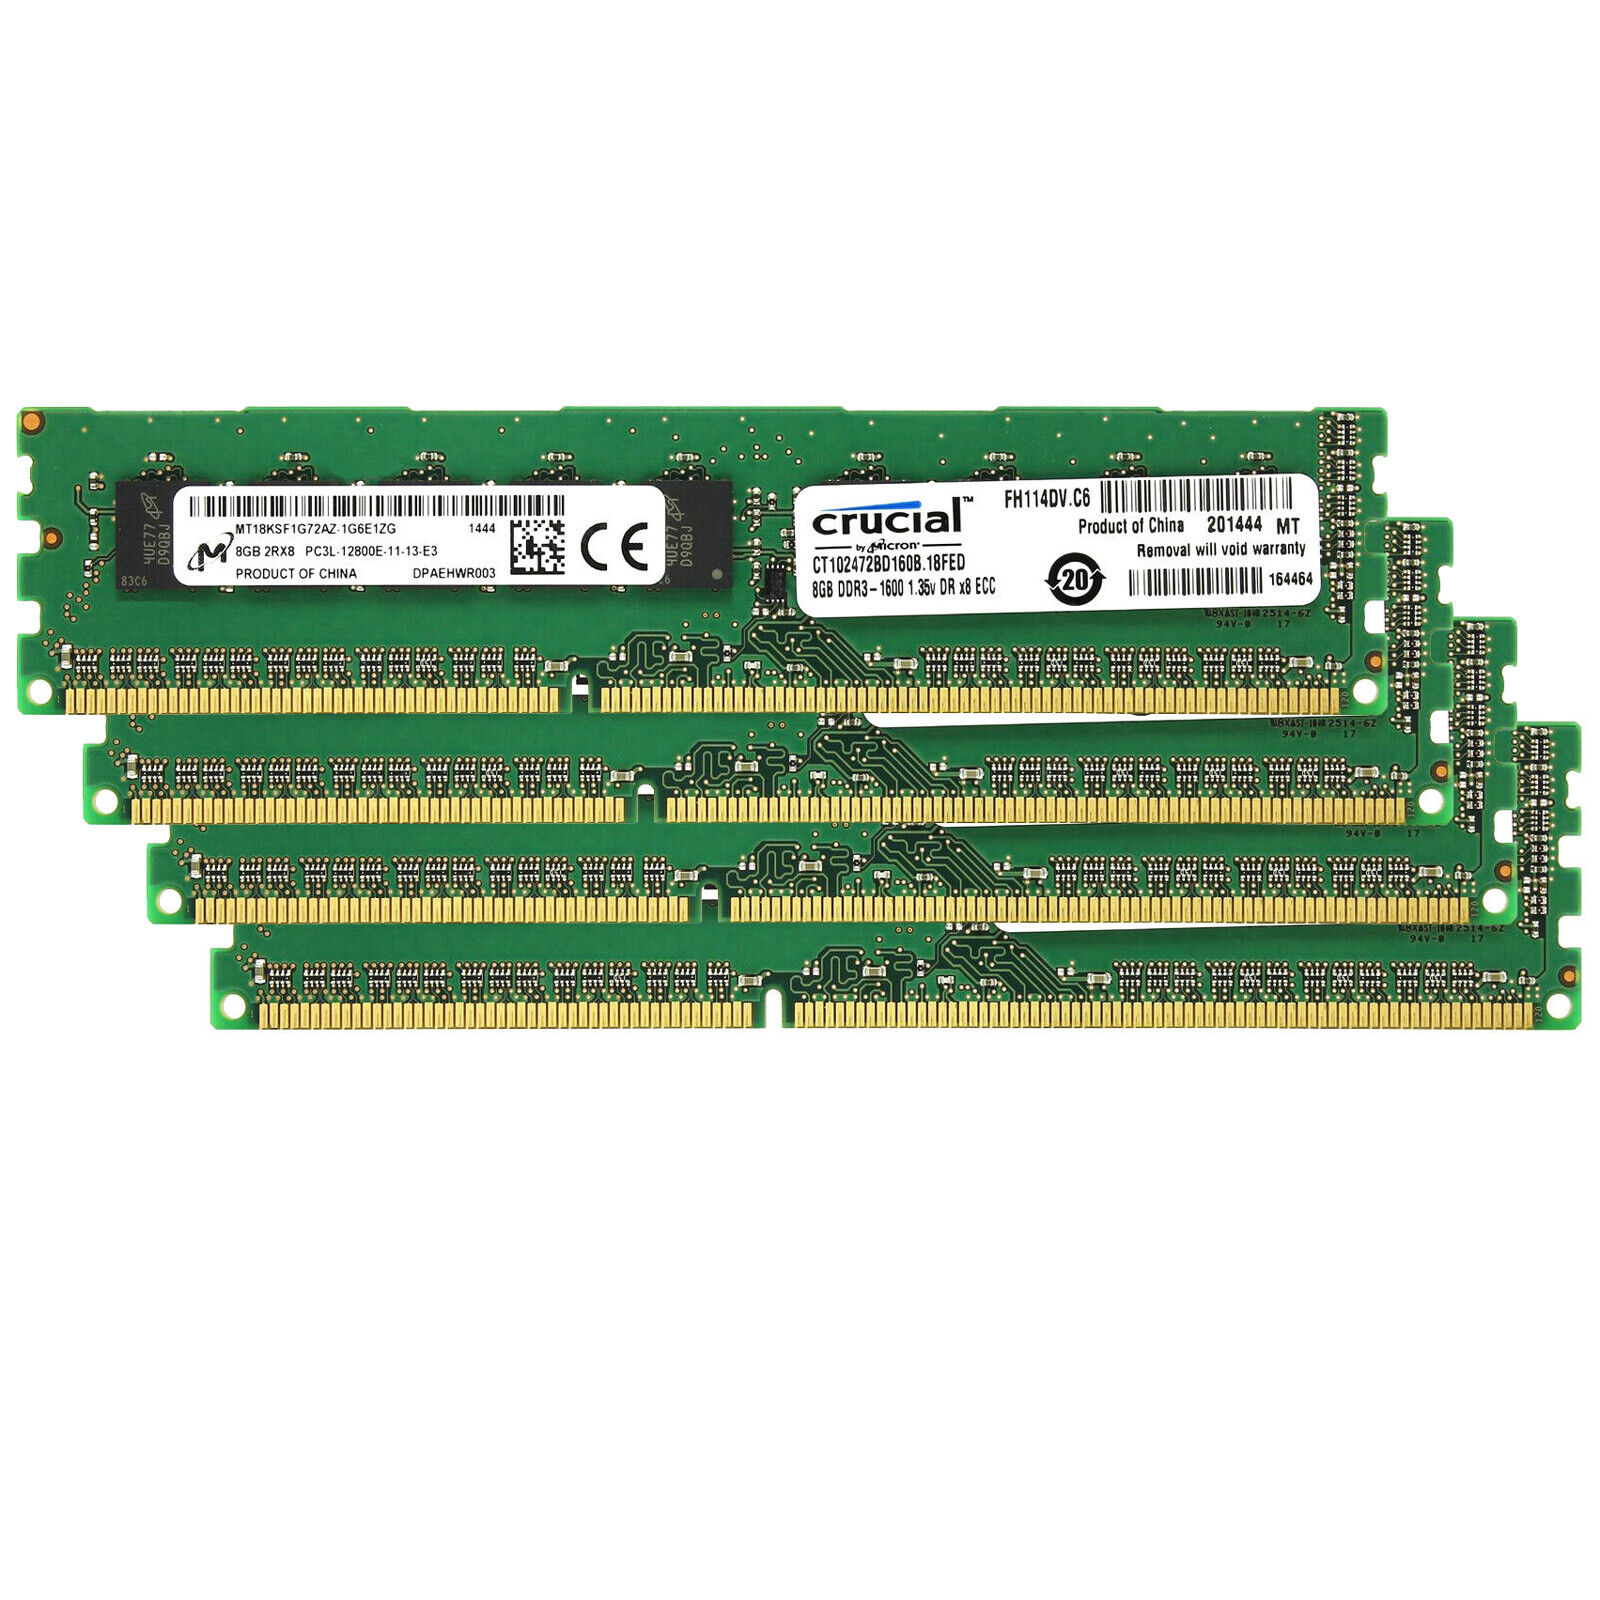 Crucial KIT 32GB(4 x 8GB) DDR3L 1600MHz ECC PC3L-12800 2Rx8 Server Memory RAM